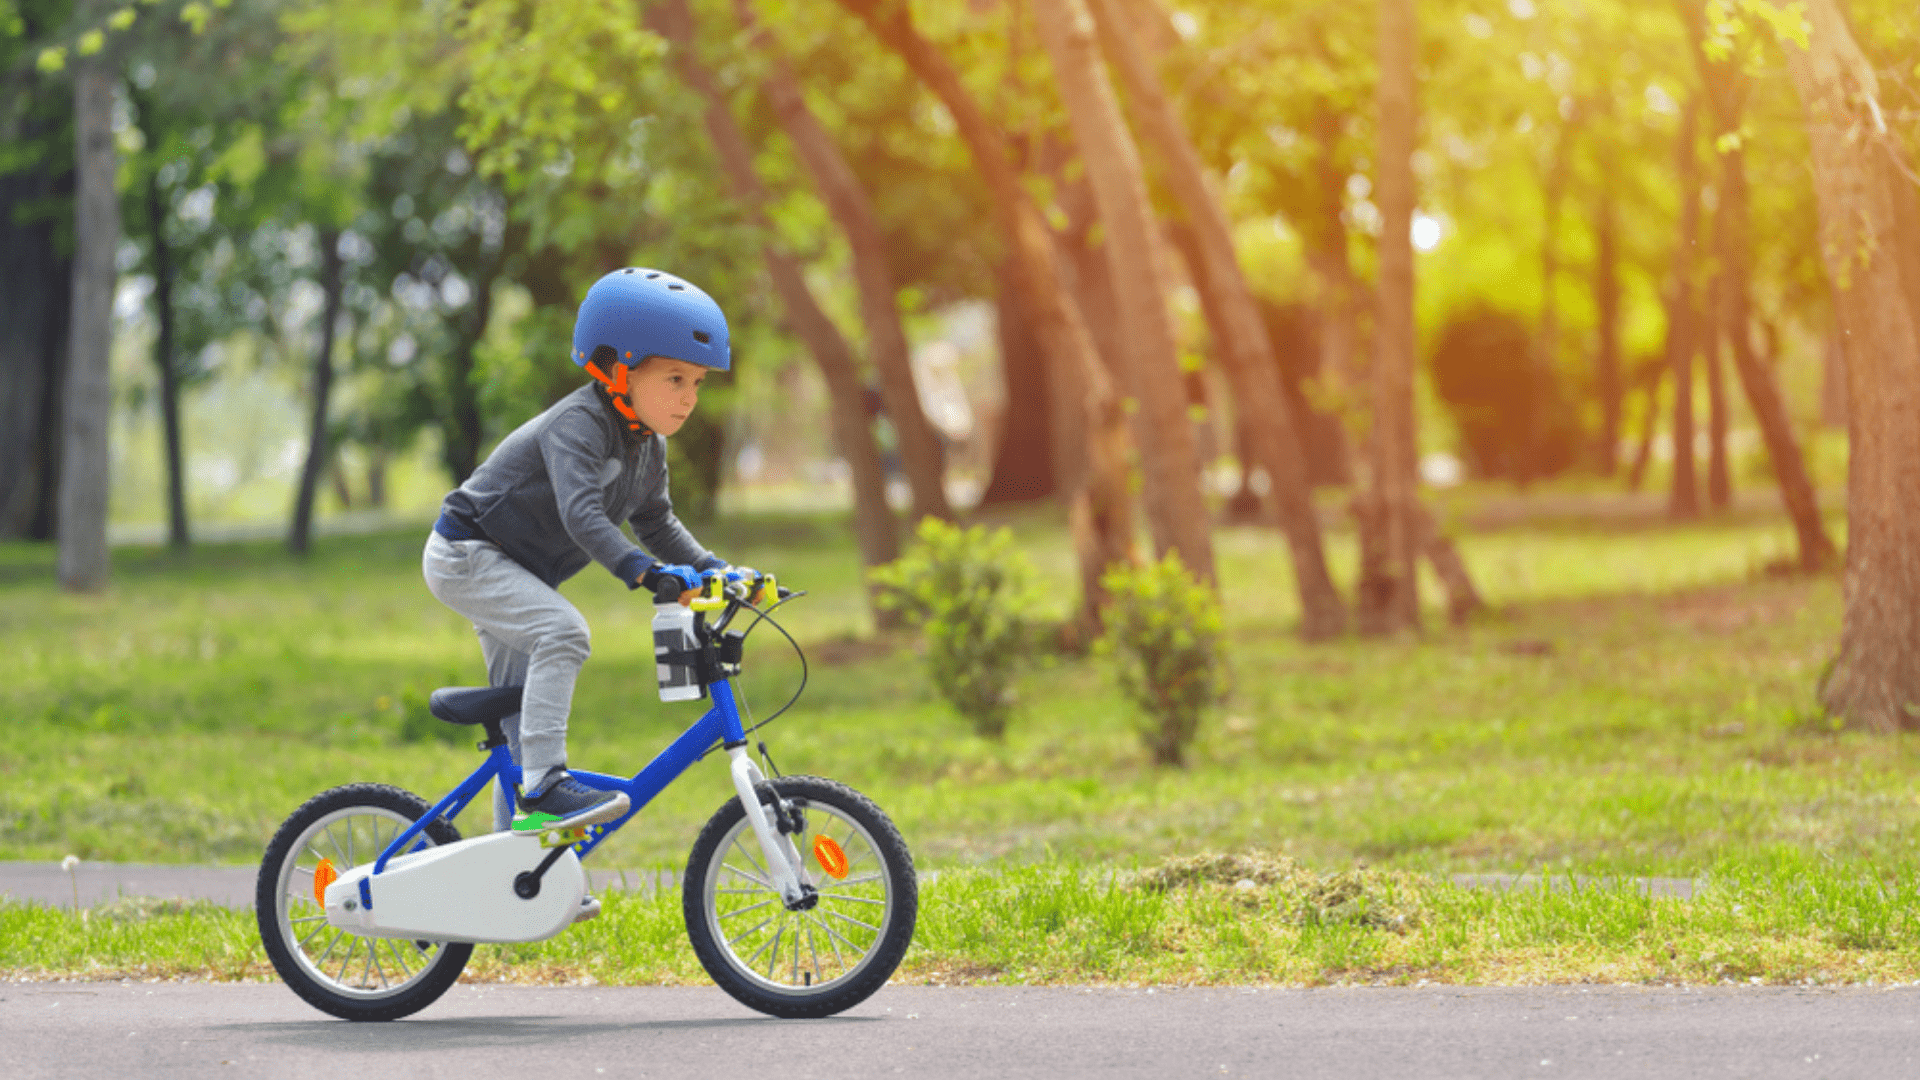 O capacete é um item indispensável na hora de andar de bicicleta (Imagem: Reprodução/Shutterstock)